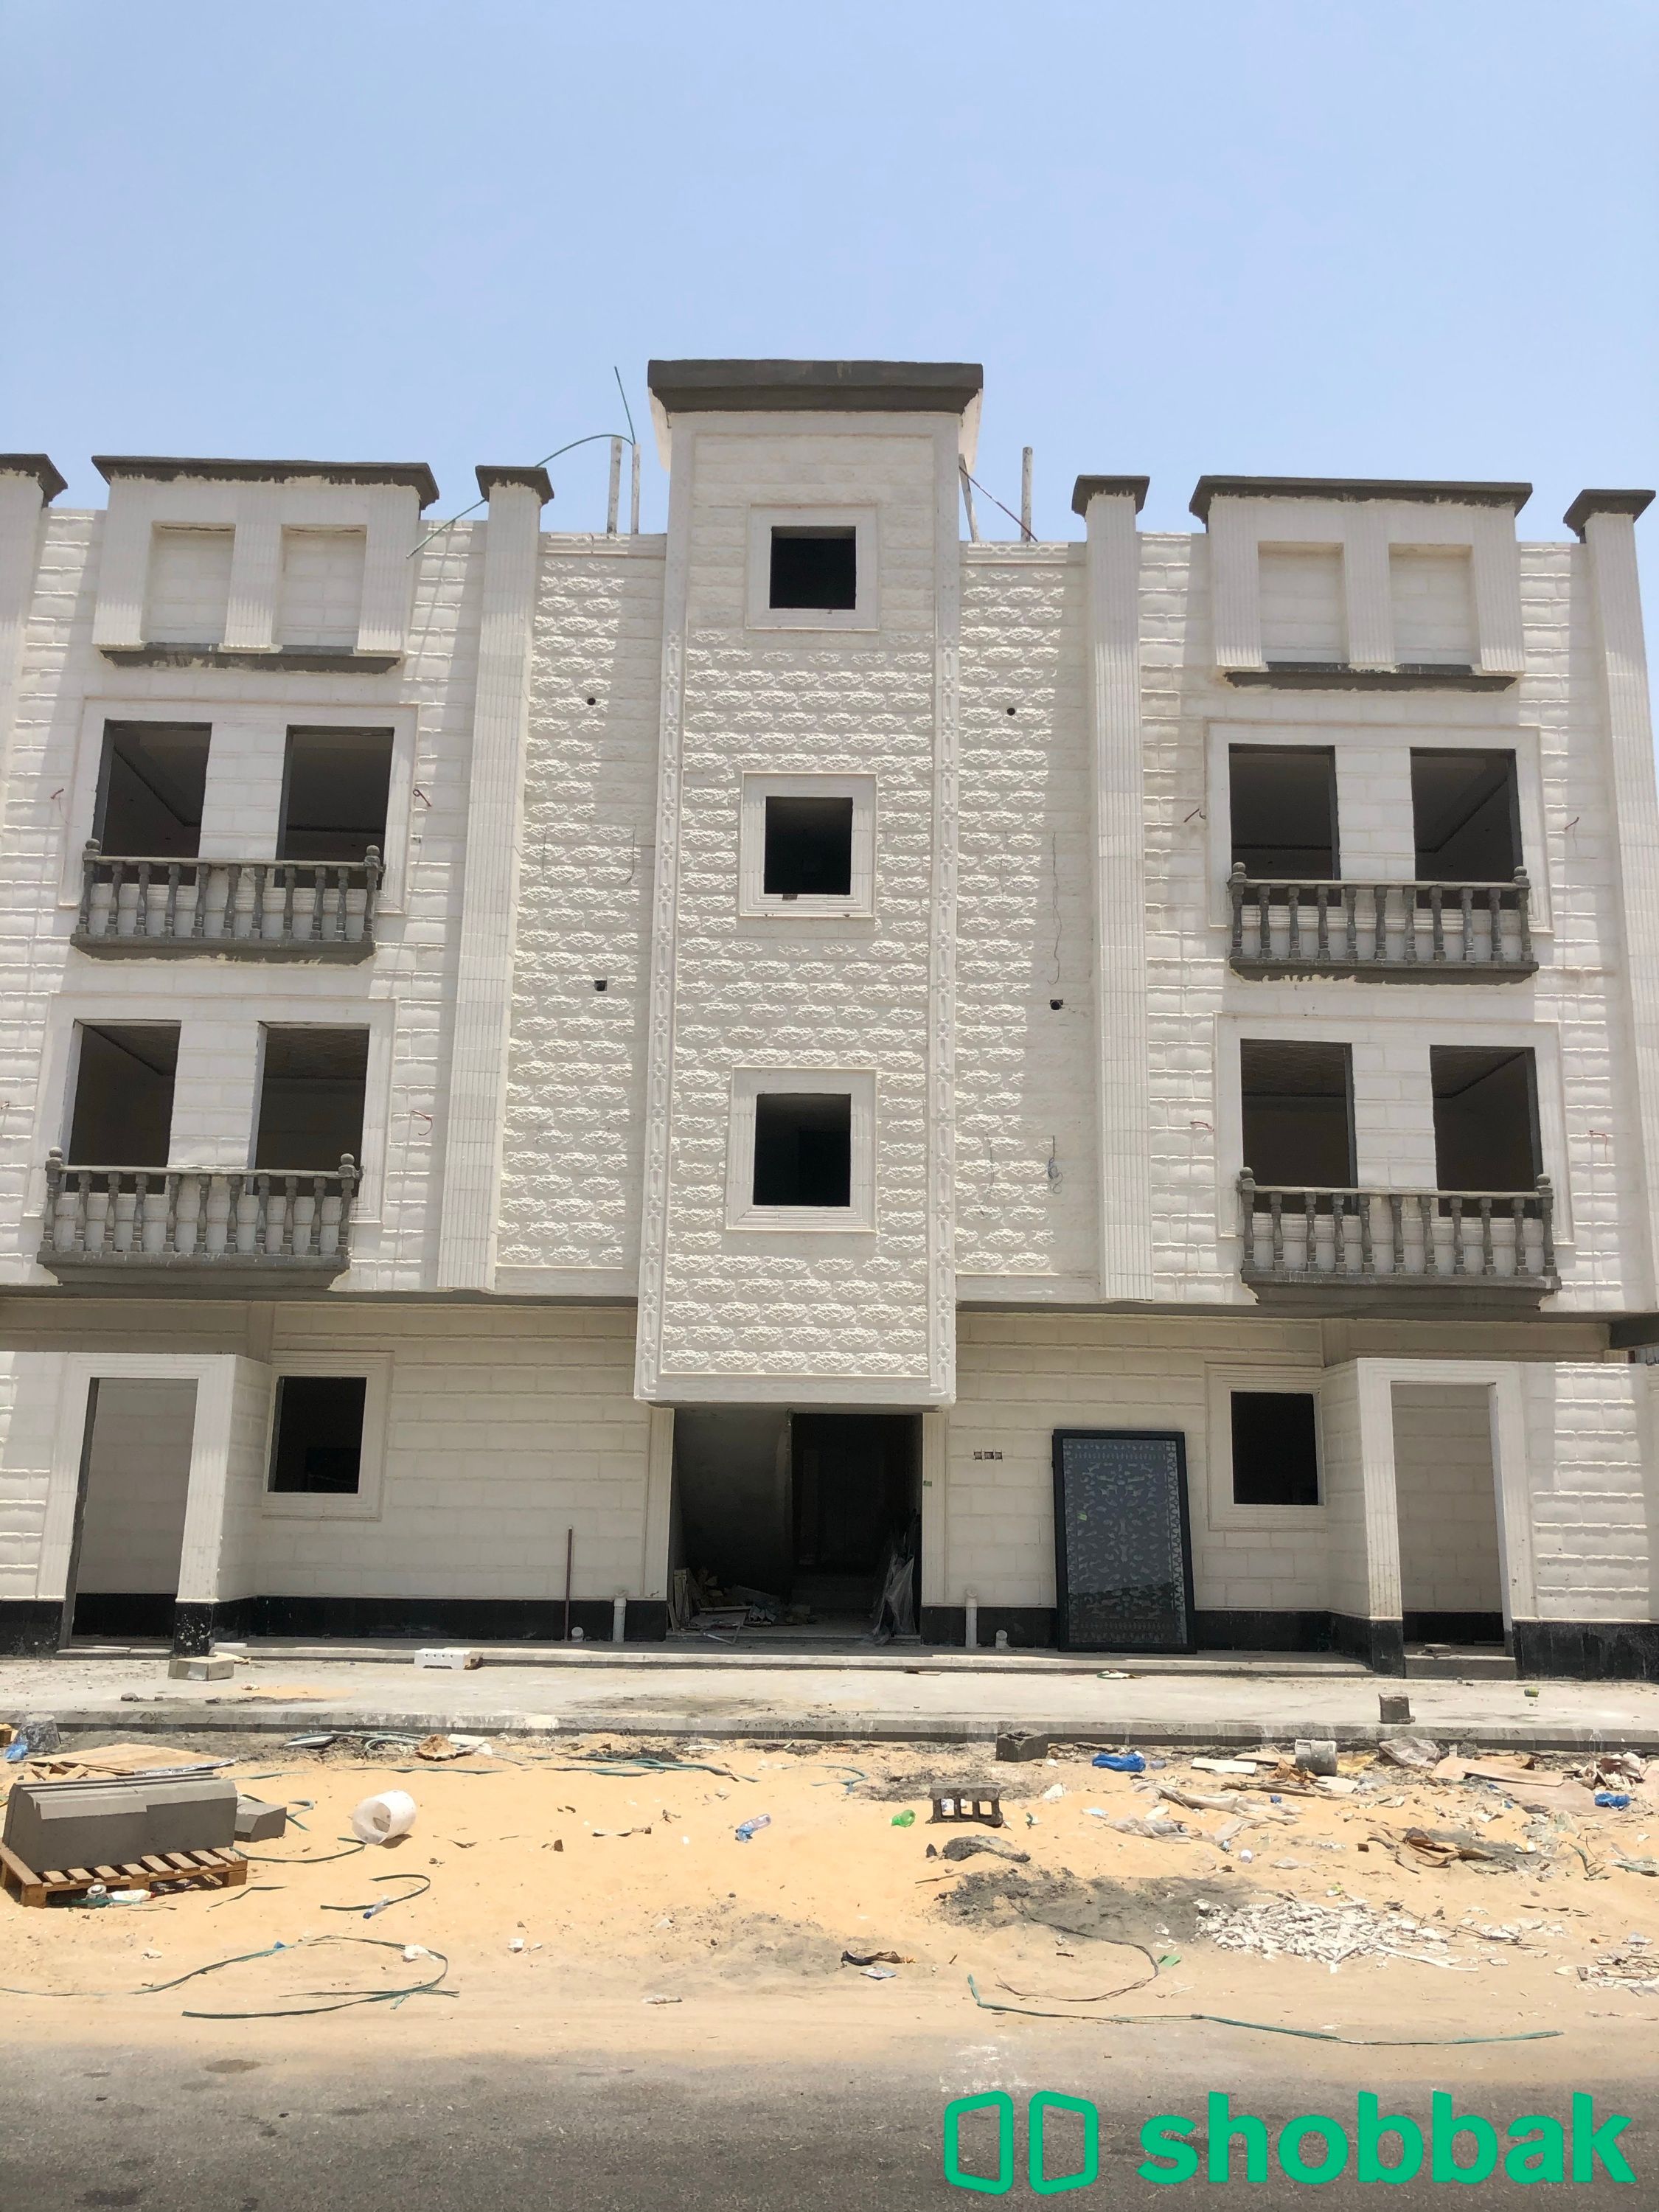 شقة للبيع رقم 1 الدور الأرضي - حي الفيحاء الدمام  Shobbak Saudi Arabia